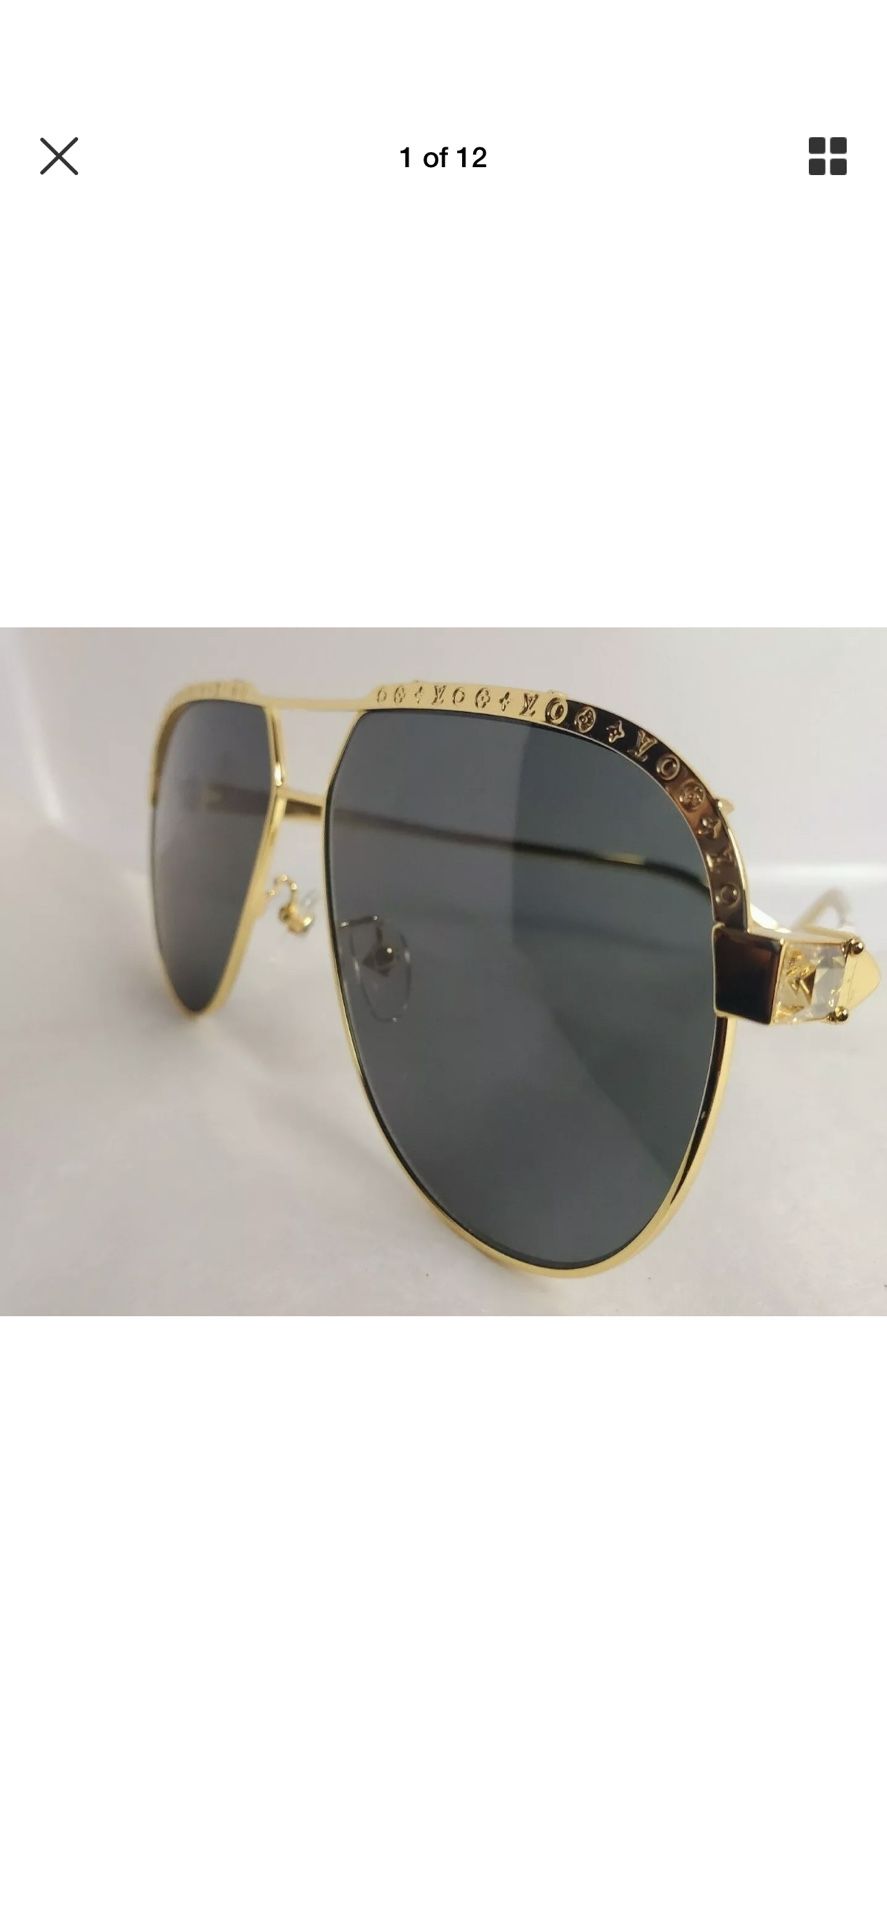 Authentic Louis Vuitton sunglasses 😎